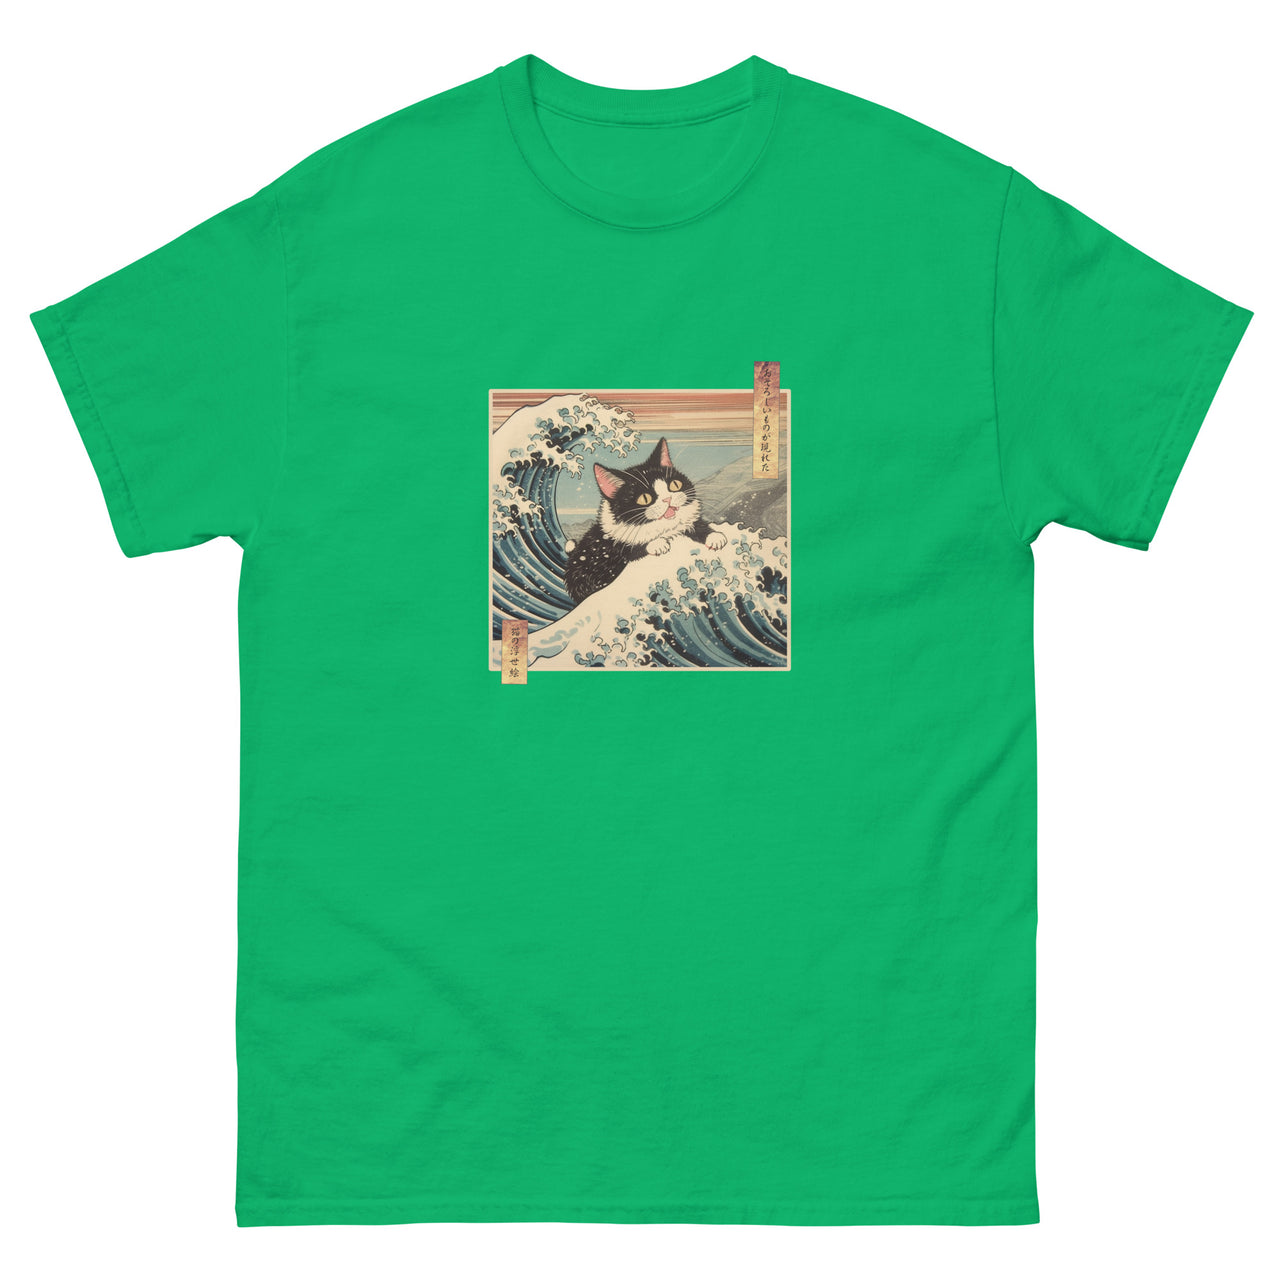 A Fearsome Cat Ukiyo-e Great Wave T-Shirt